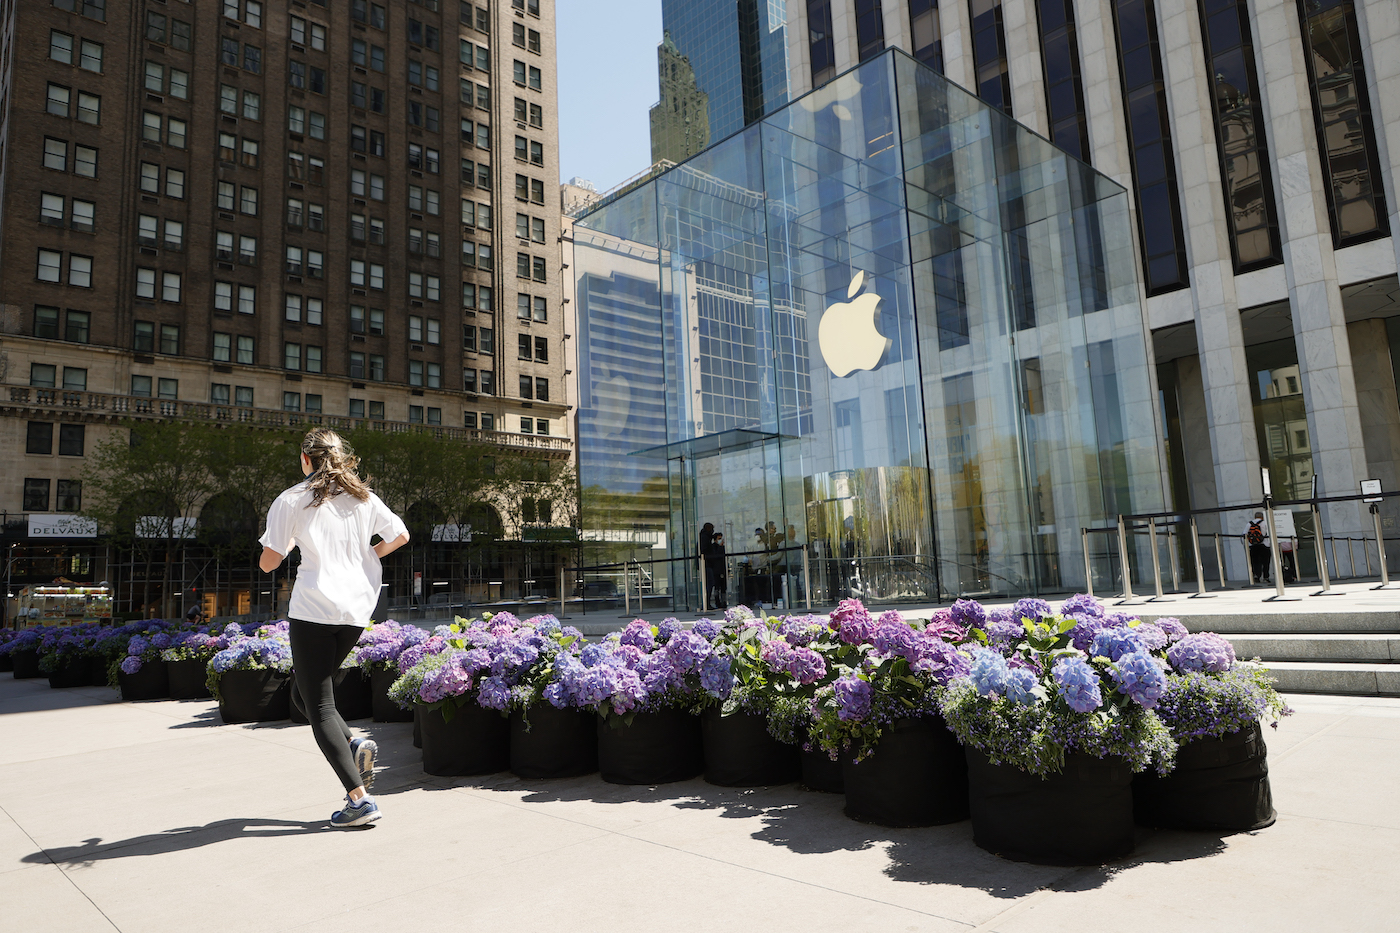 نیویورک ، نیویورک - 01 مه: یک دونده دونده از خیابان پنجم ، روز مادر شکوفه می کند ، جلوی فروشگاه The Apple در 01 مه 2021 در شهر نیویورک.  (عکس مایکل لوکیسانو/گتی ایماژ برای نصب روز مادر در خیابان پنجم شکوفا می شود)